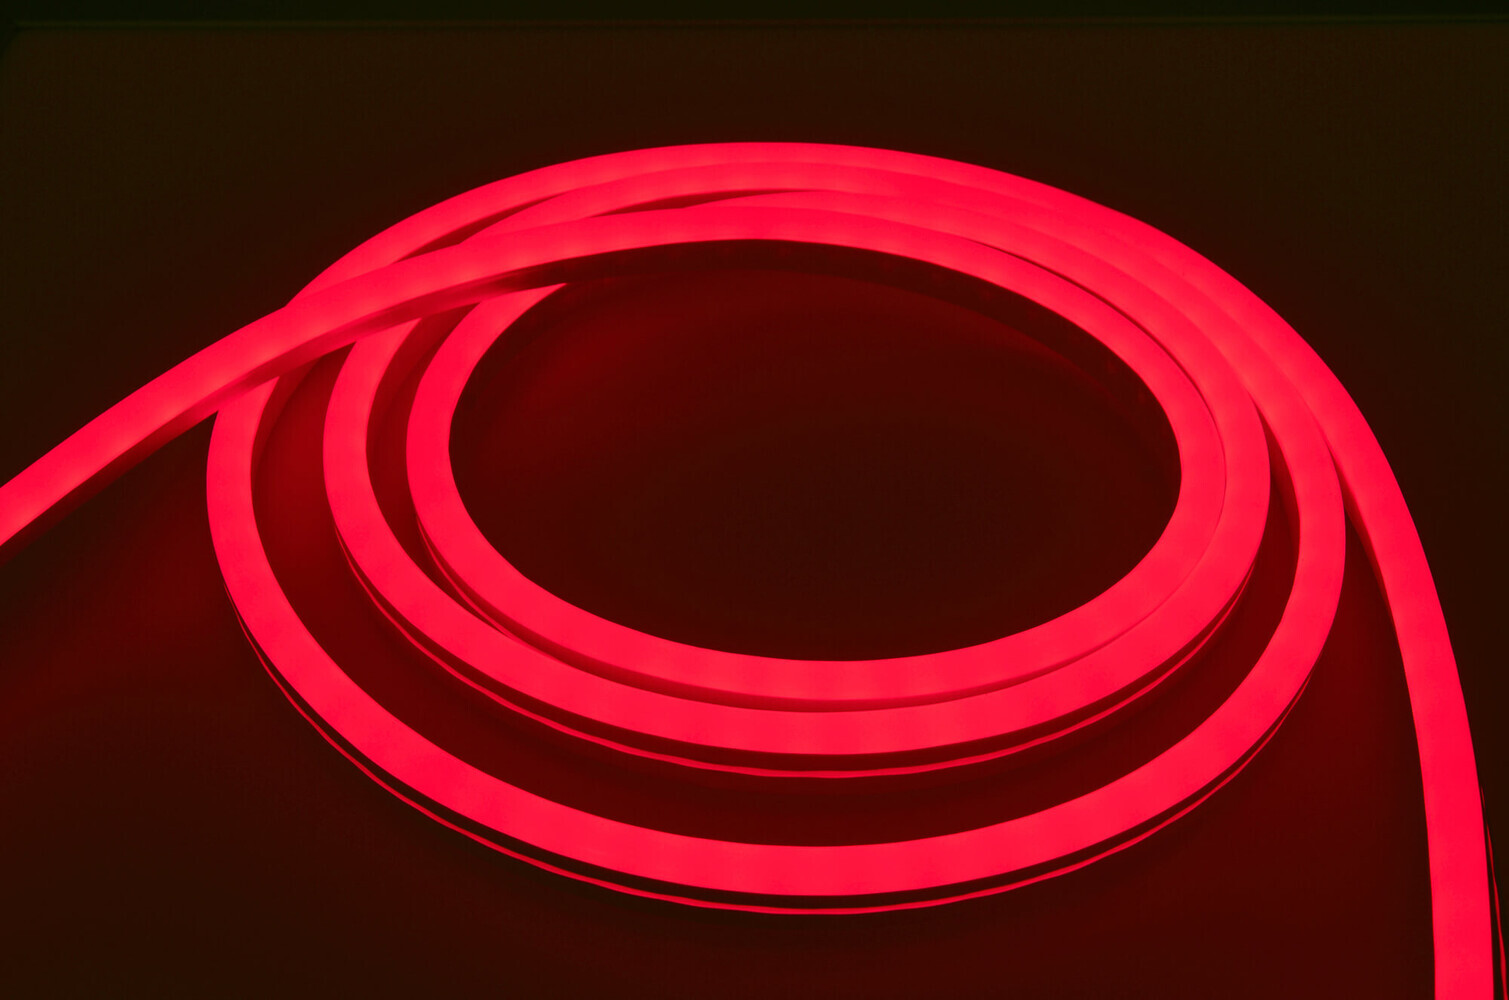 Bunter LED Streifen von LED Universum mit professioneller 230V NeonFlex Technologie für vielfältige Lichtgestaltung